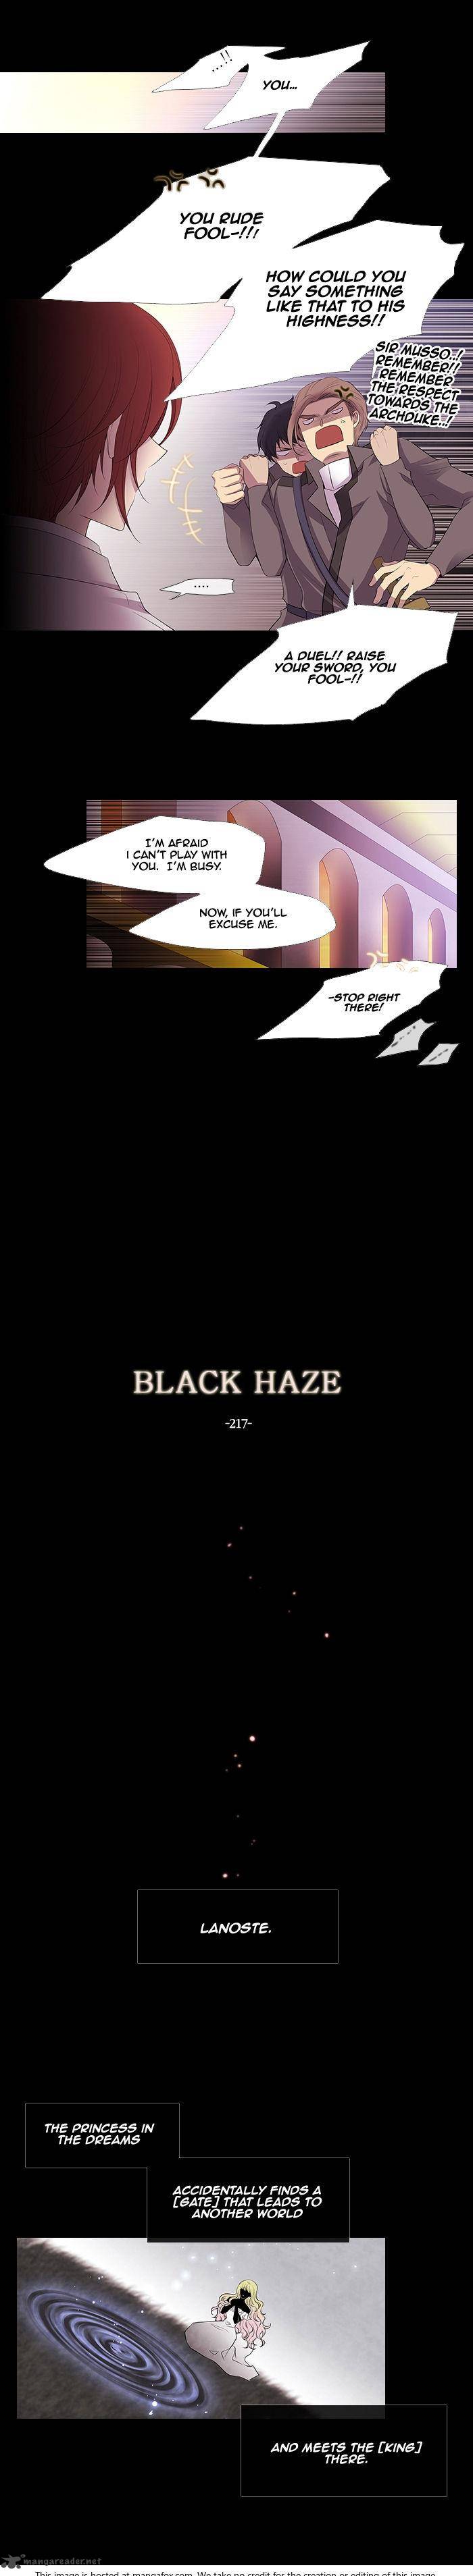 black_haze_219_6